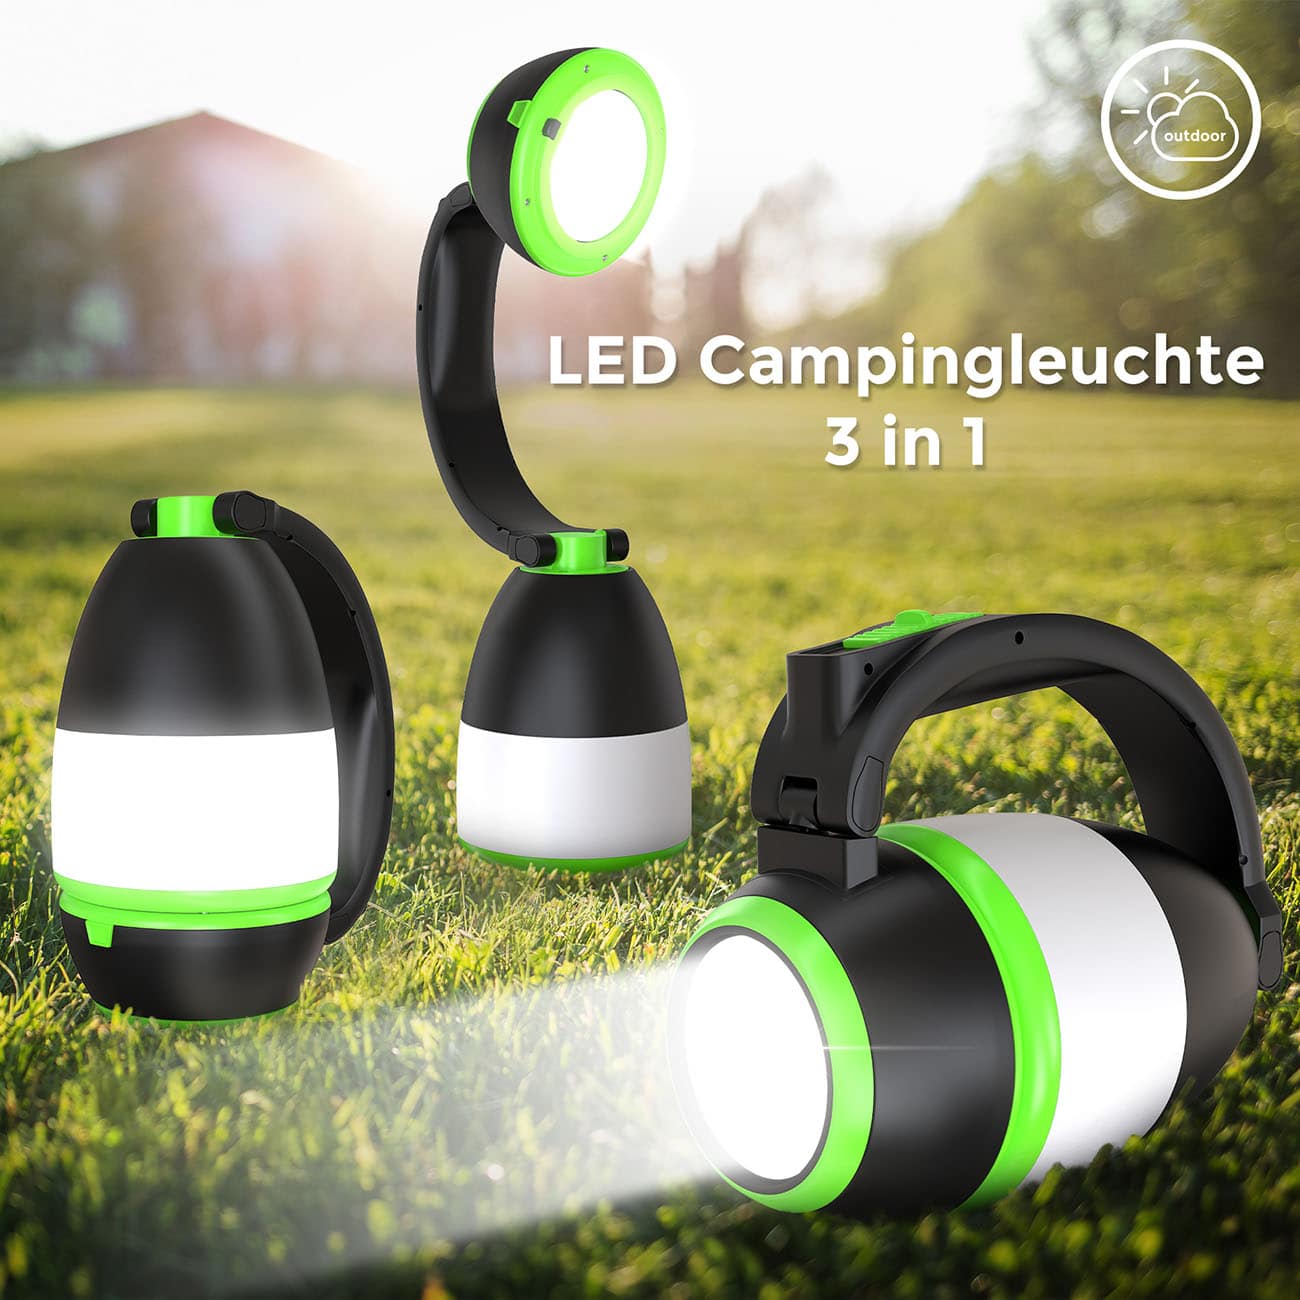 LED Outdoor-Taschenlampe 13x8x15,5 cm - 3 in 1 - Campingleuchte Tisch-Laterne 2 Helligkeitsstufen klappbar batteriebetrieben | grün-schwarz - 4